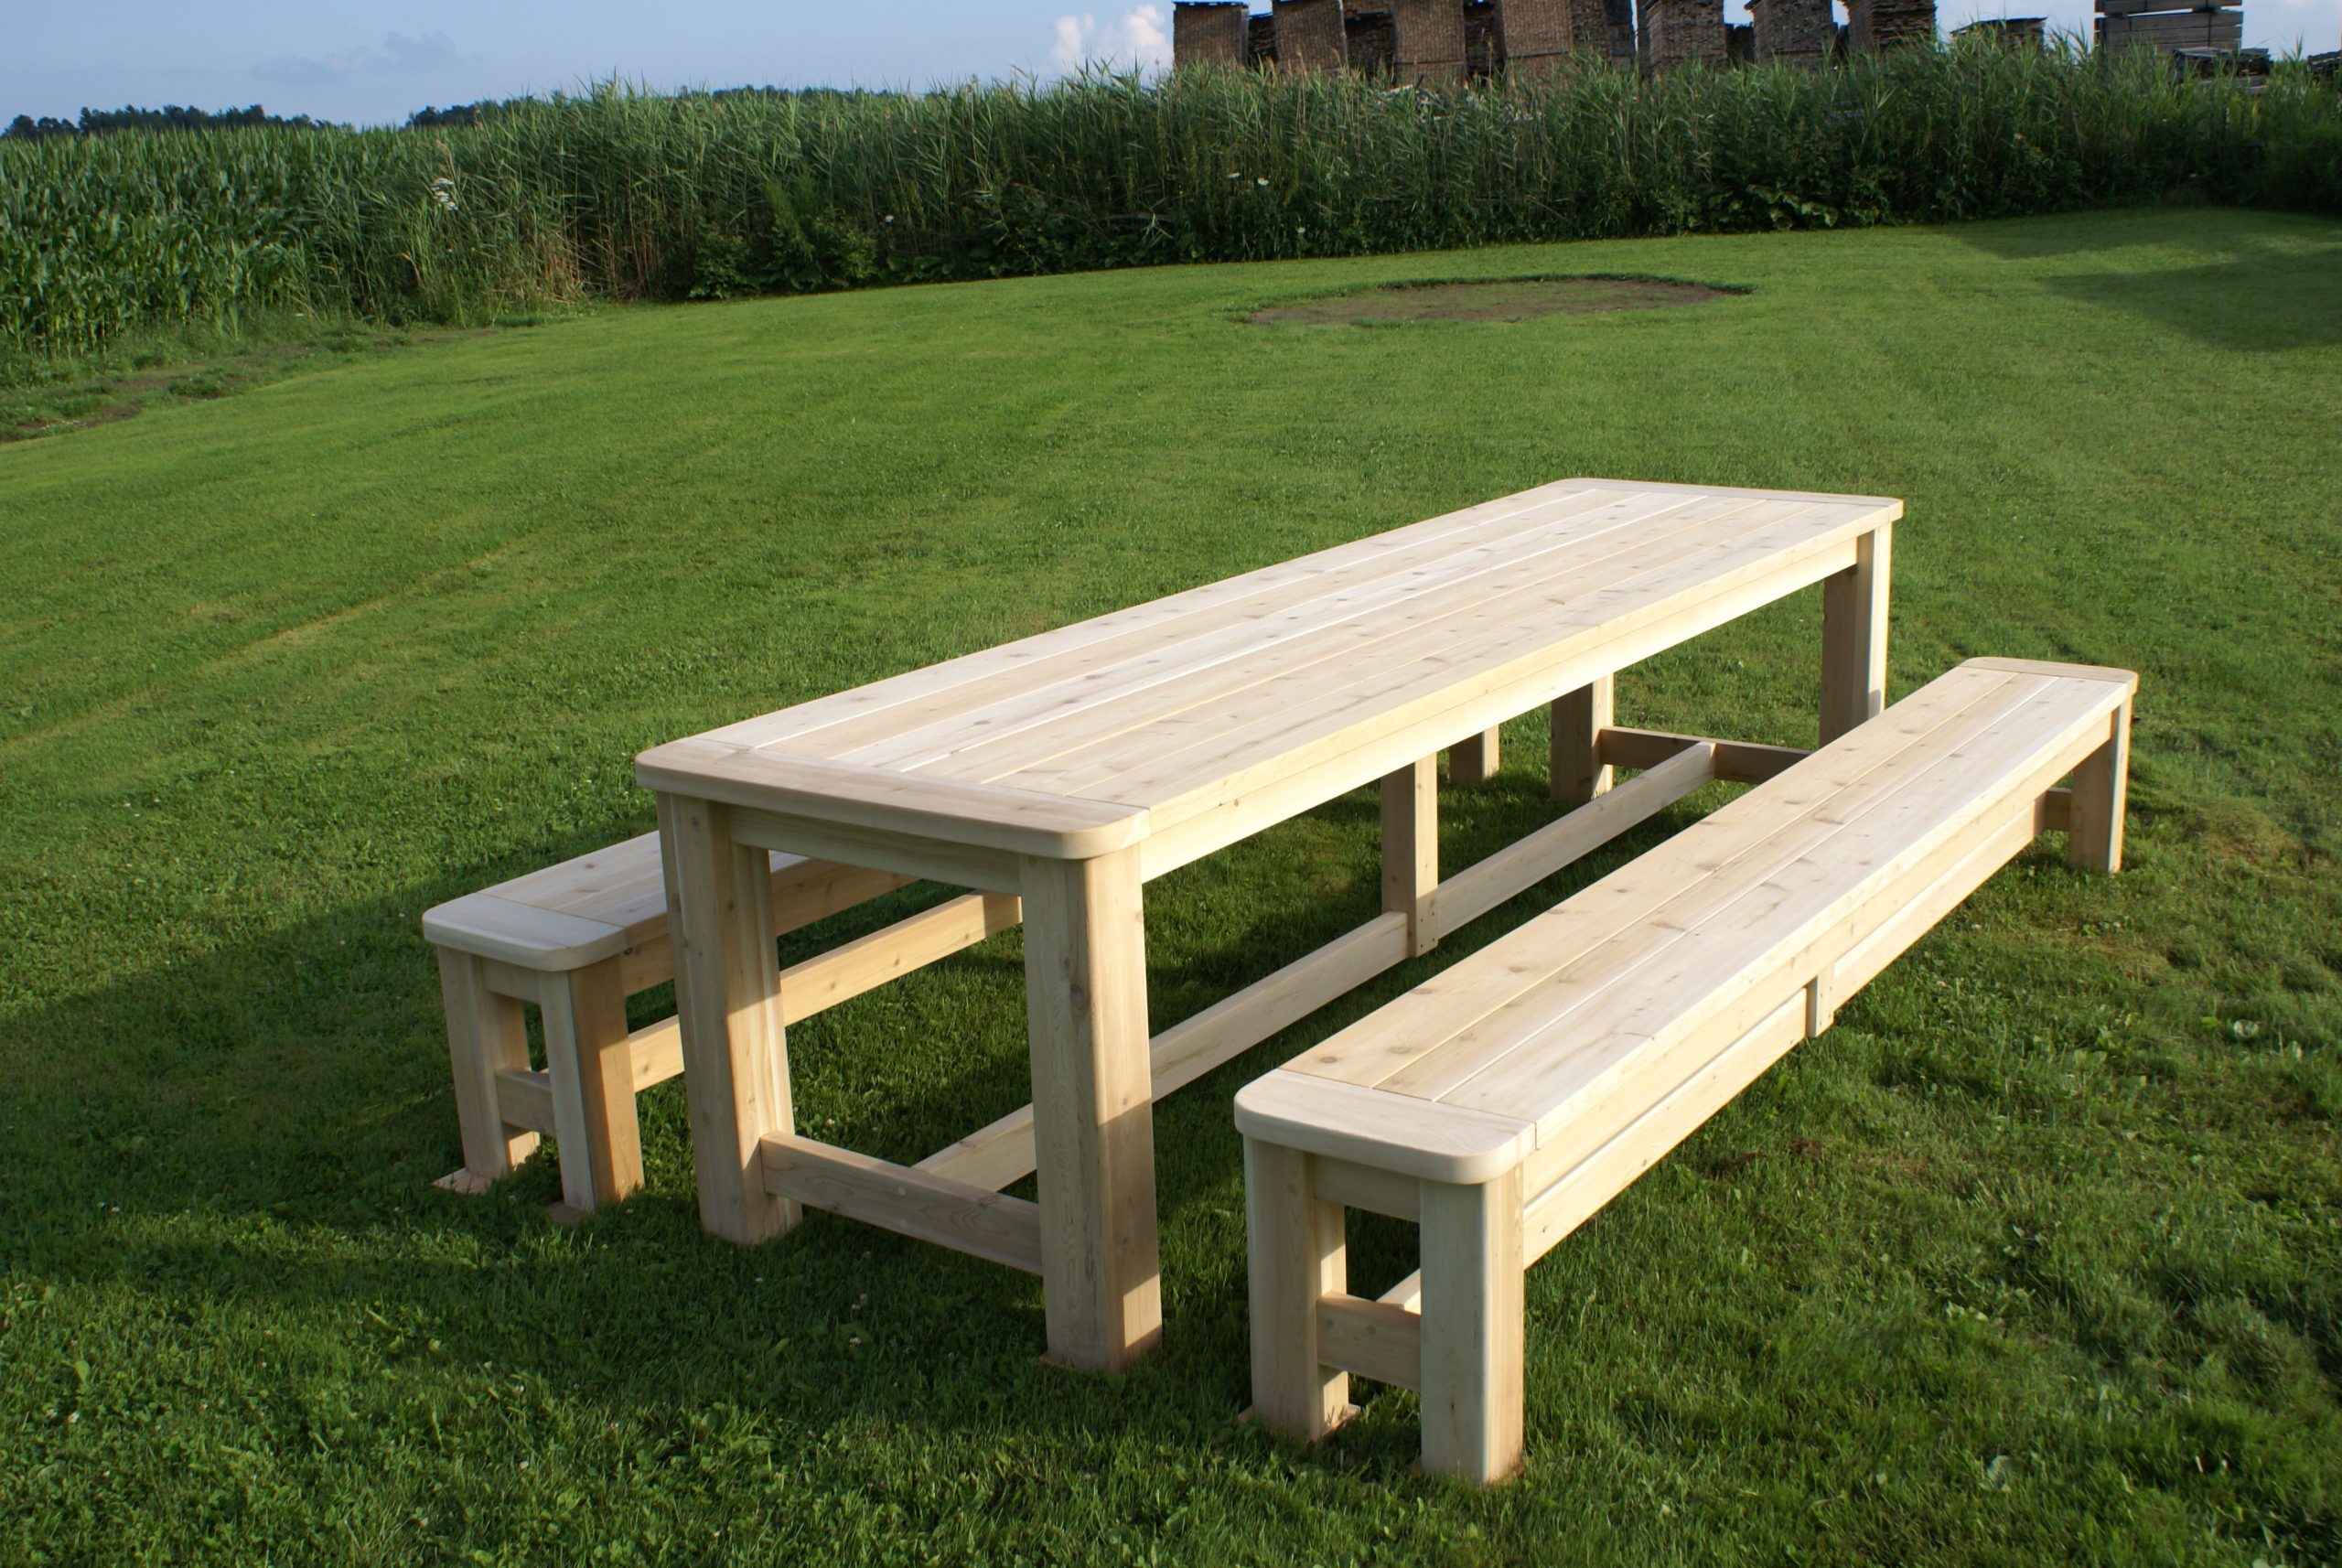 Fabriquer Une Table De Picnic En Bois | Table De Jardin Bois ... concernant Table De Jardin Fait Maison